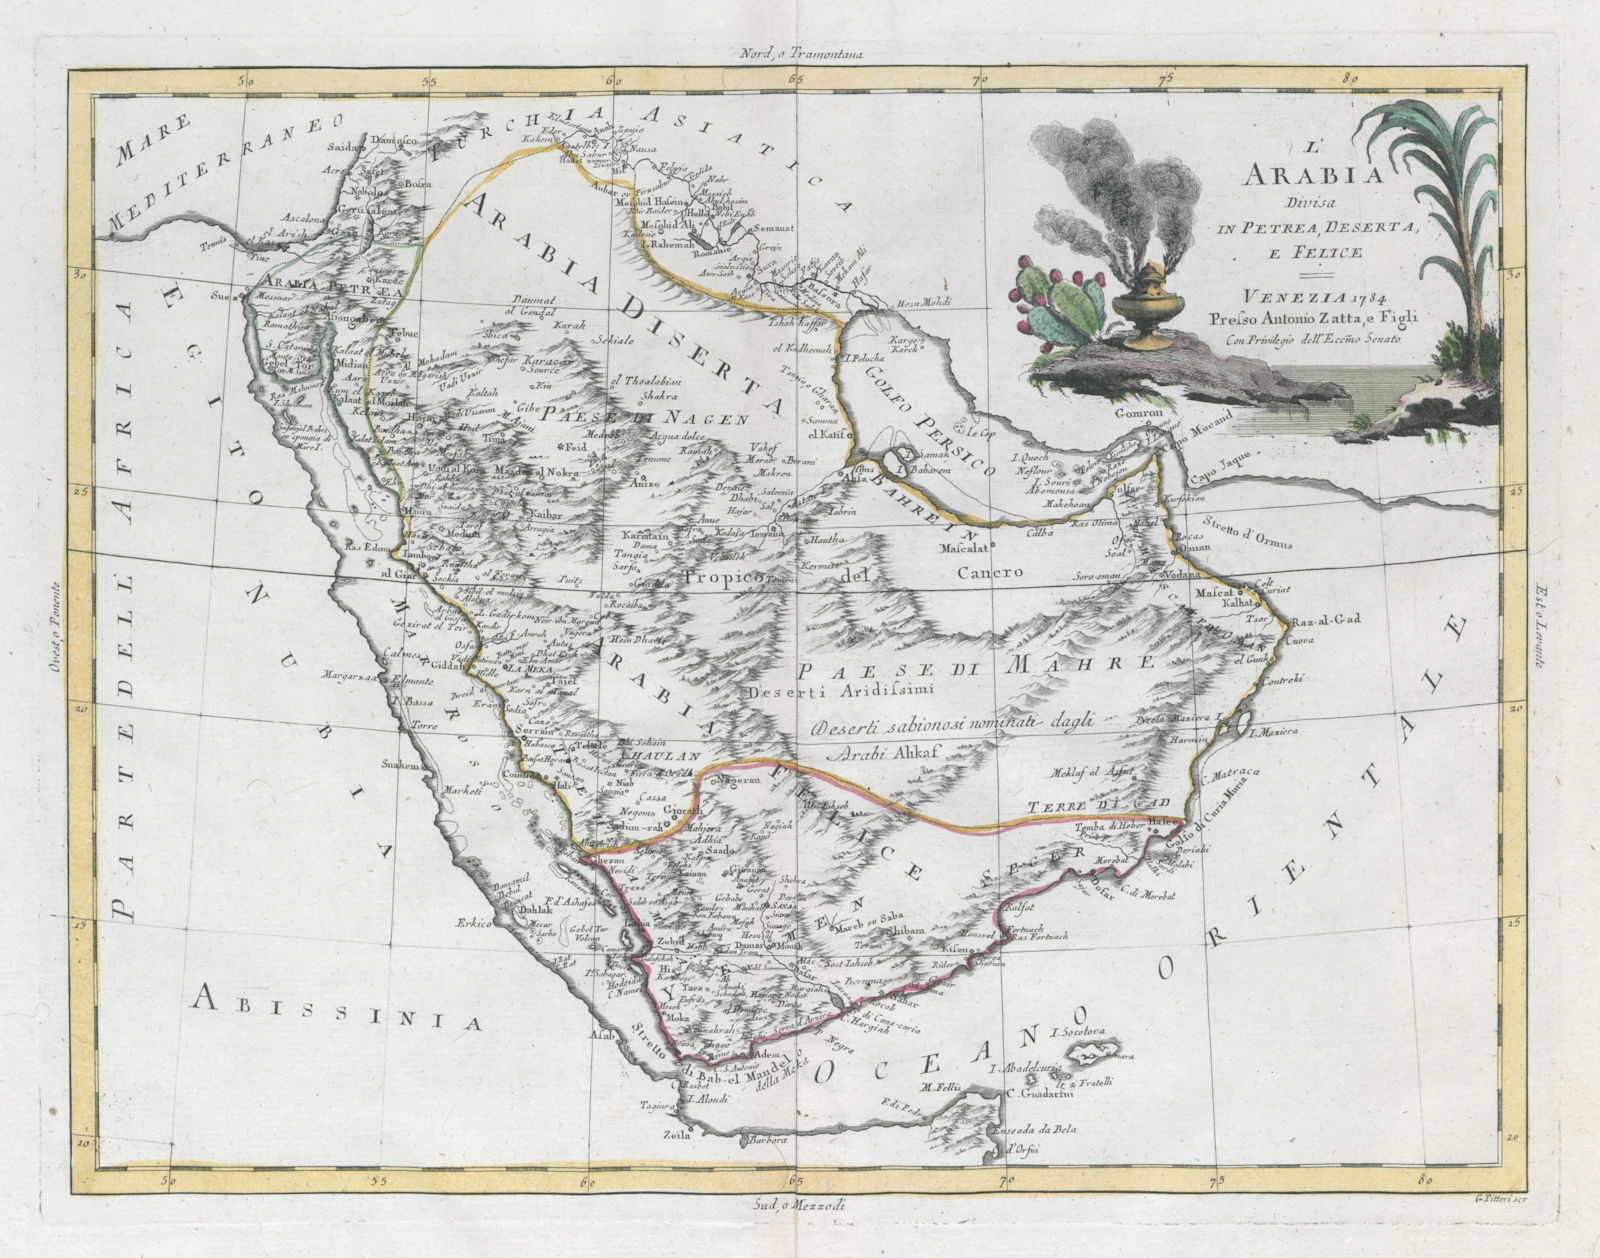 "L'Arabia divisa in Petrea, Deserta e Felice". Arabian Peninsula. ZATTA 1785 map